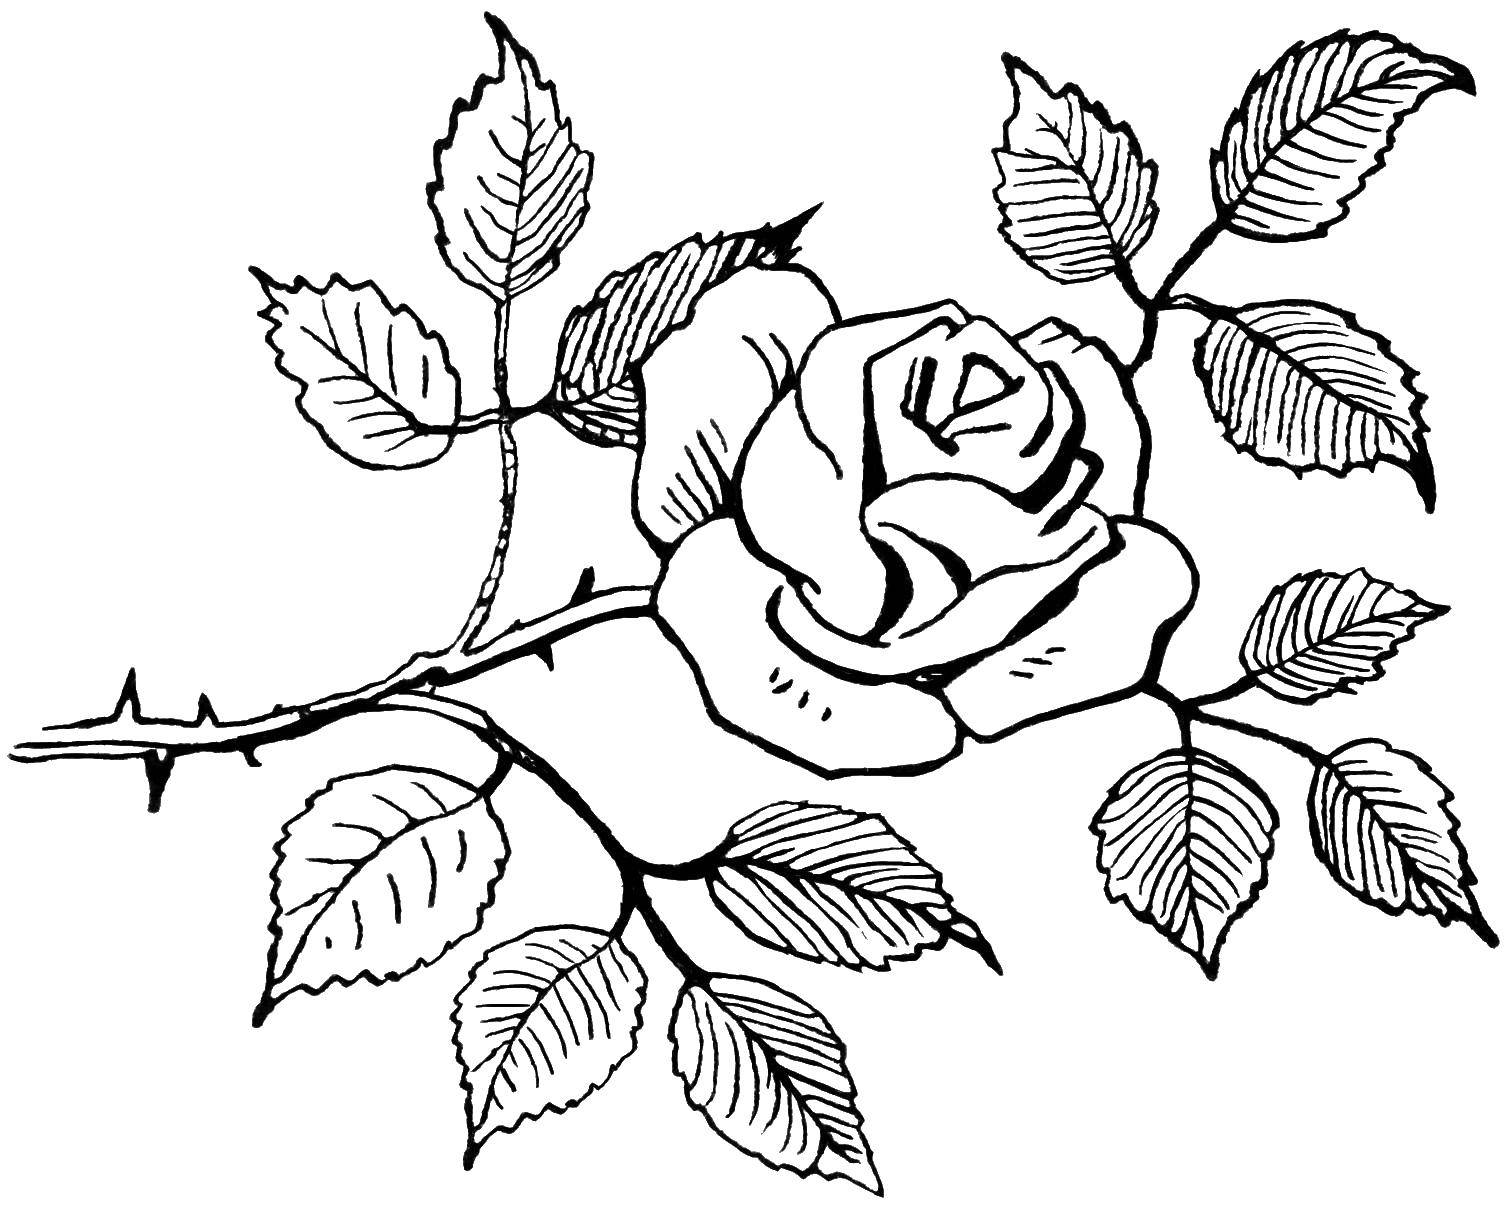 Outline download. Рисунок розы для срисовки.